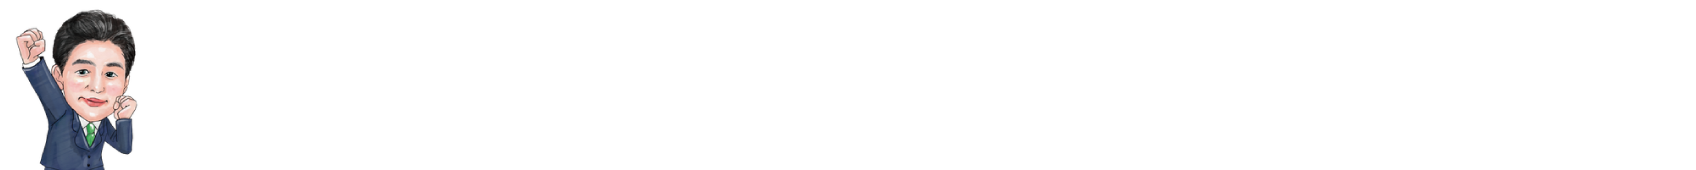 武蔵村山市議会議員-ながほり武 公式ホームページ